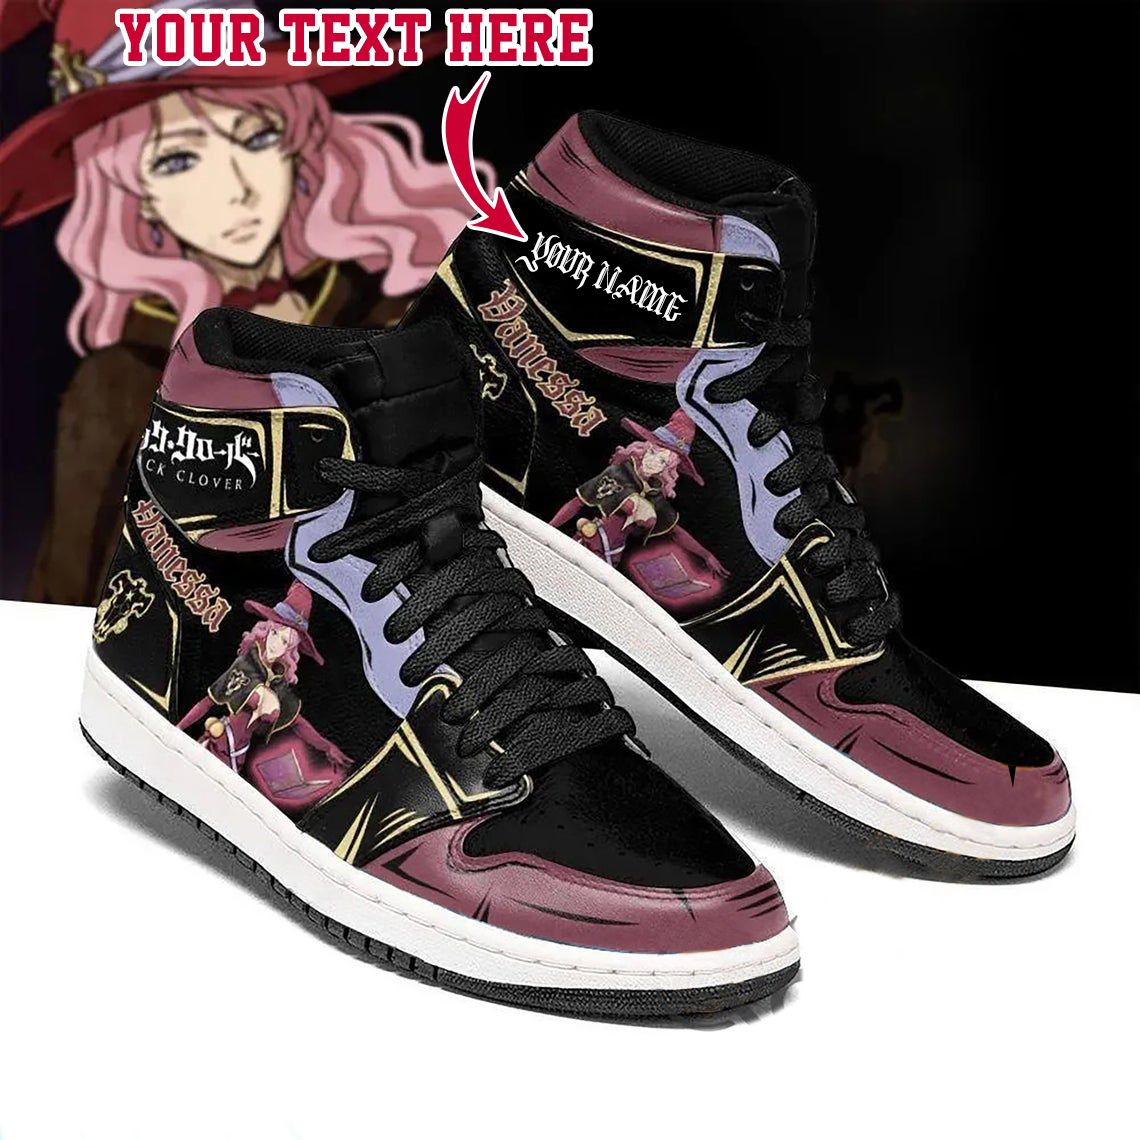 Vanessa Enoteca Black Clover Fans Film High Retro AJ-1 Customized Shoes ...